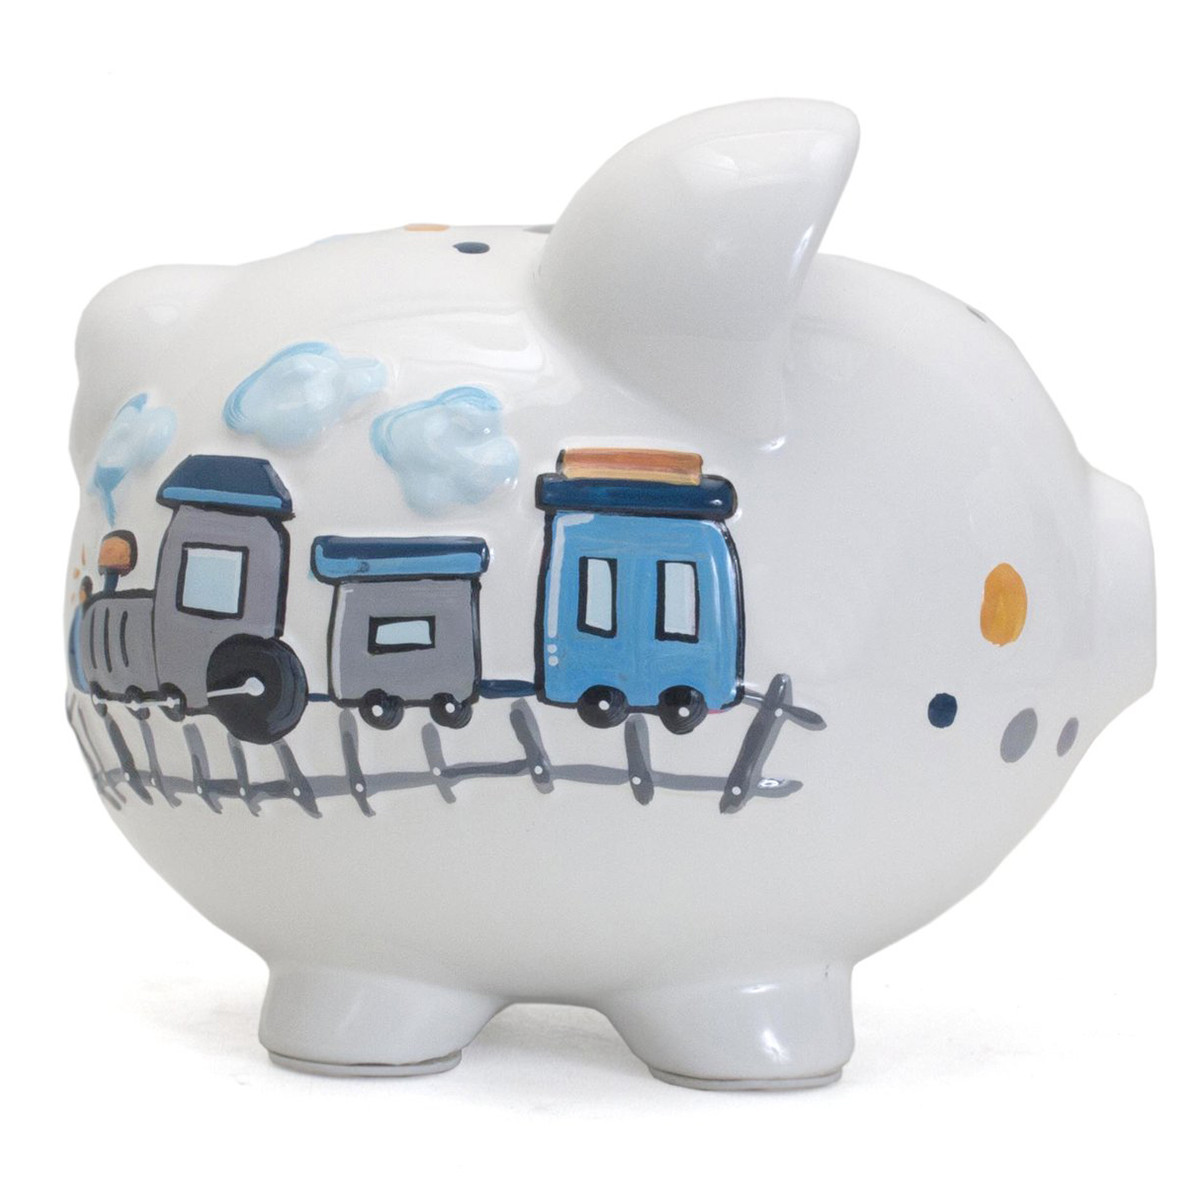 Personalized Piggy Bank - train design